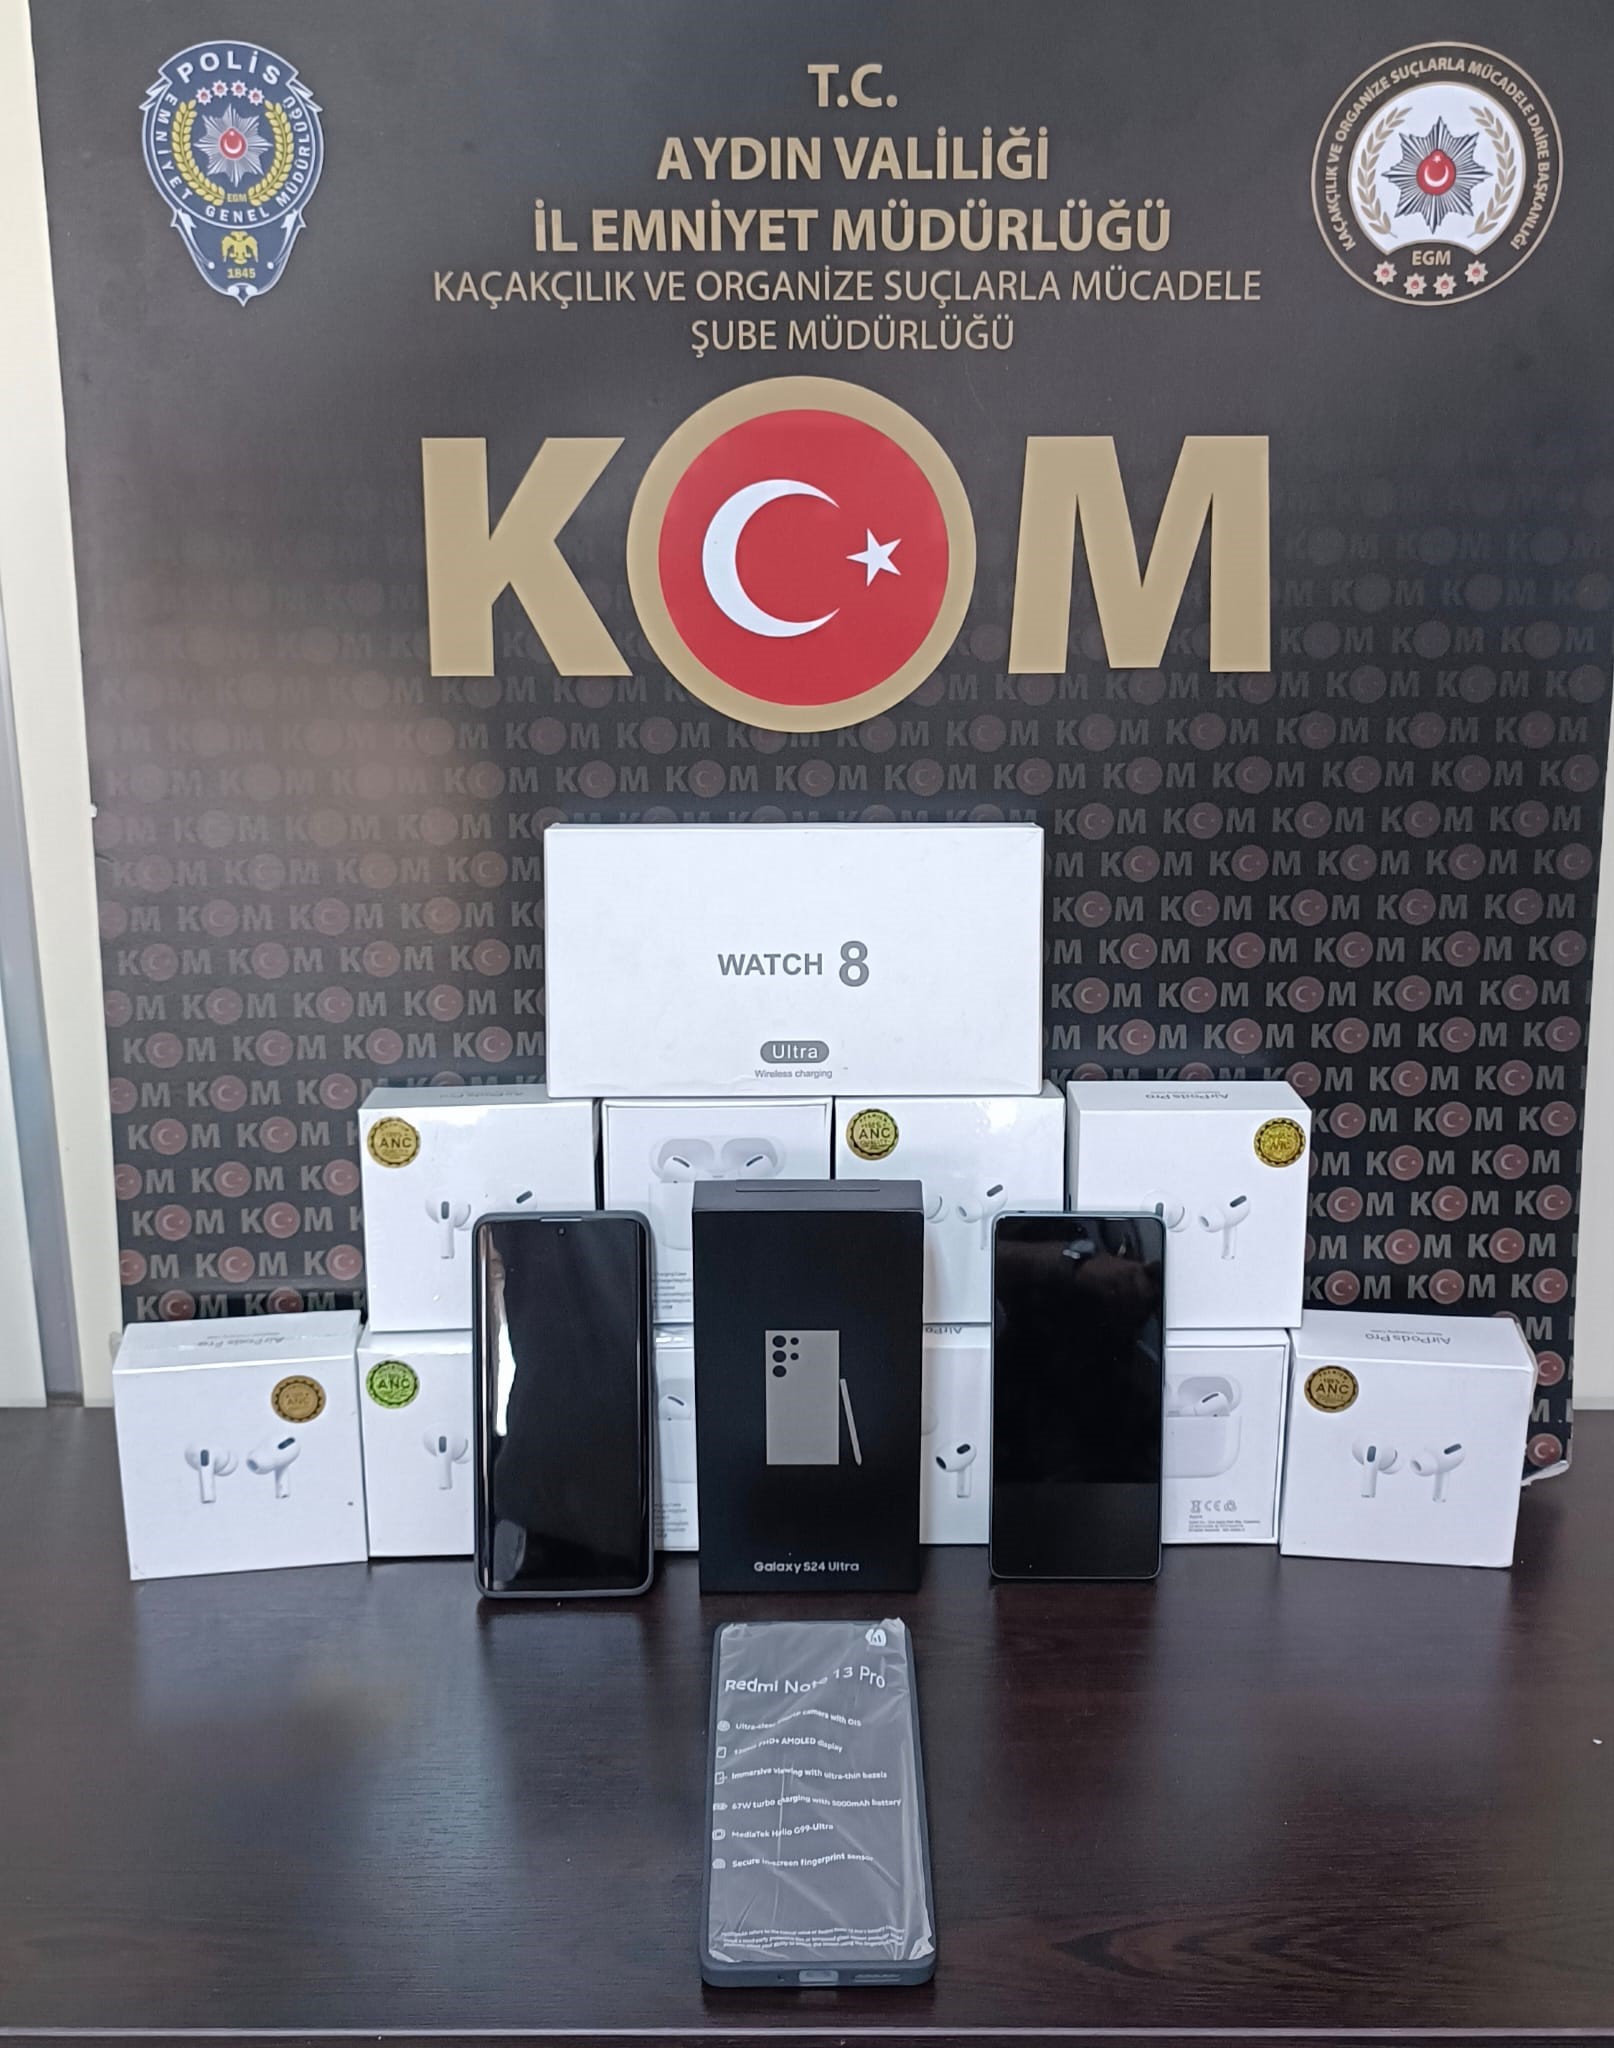 Aydın'da 200 Bin Tl Değerinde Kaçak Telefon Ele Geçirildi1